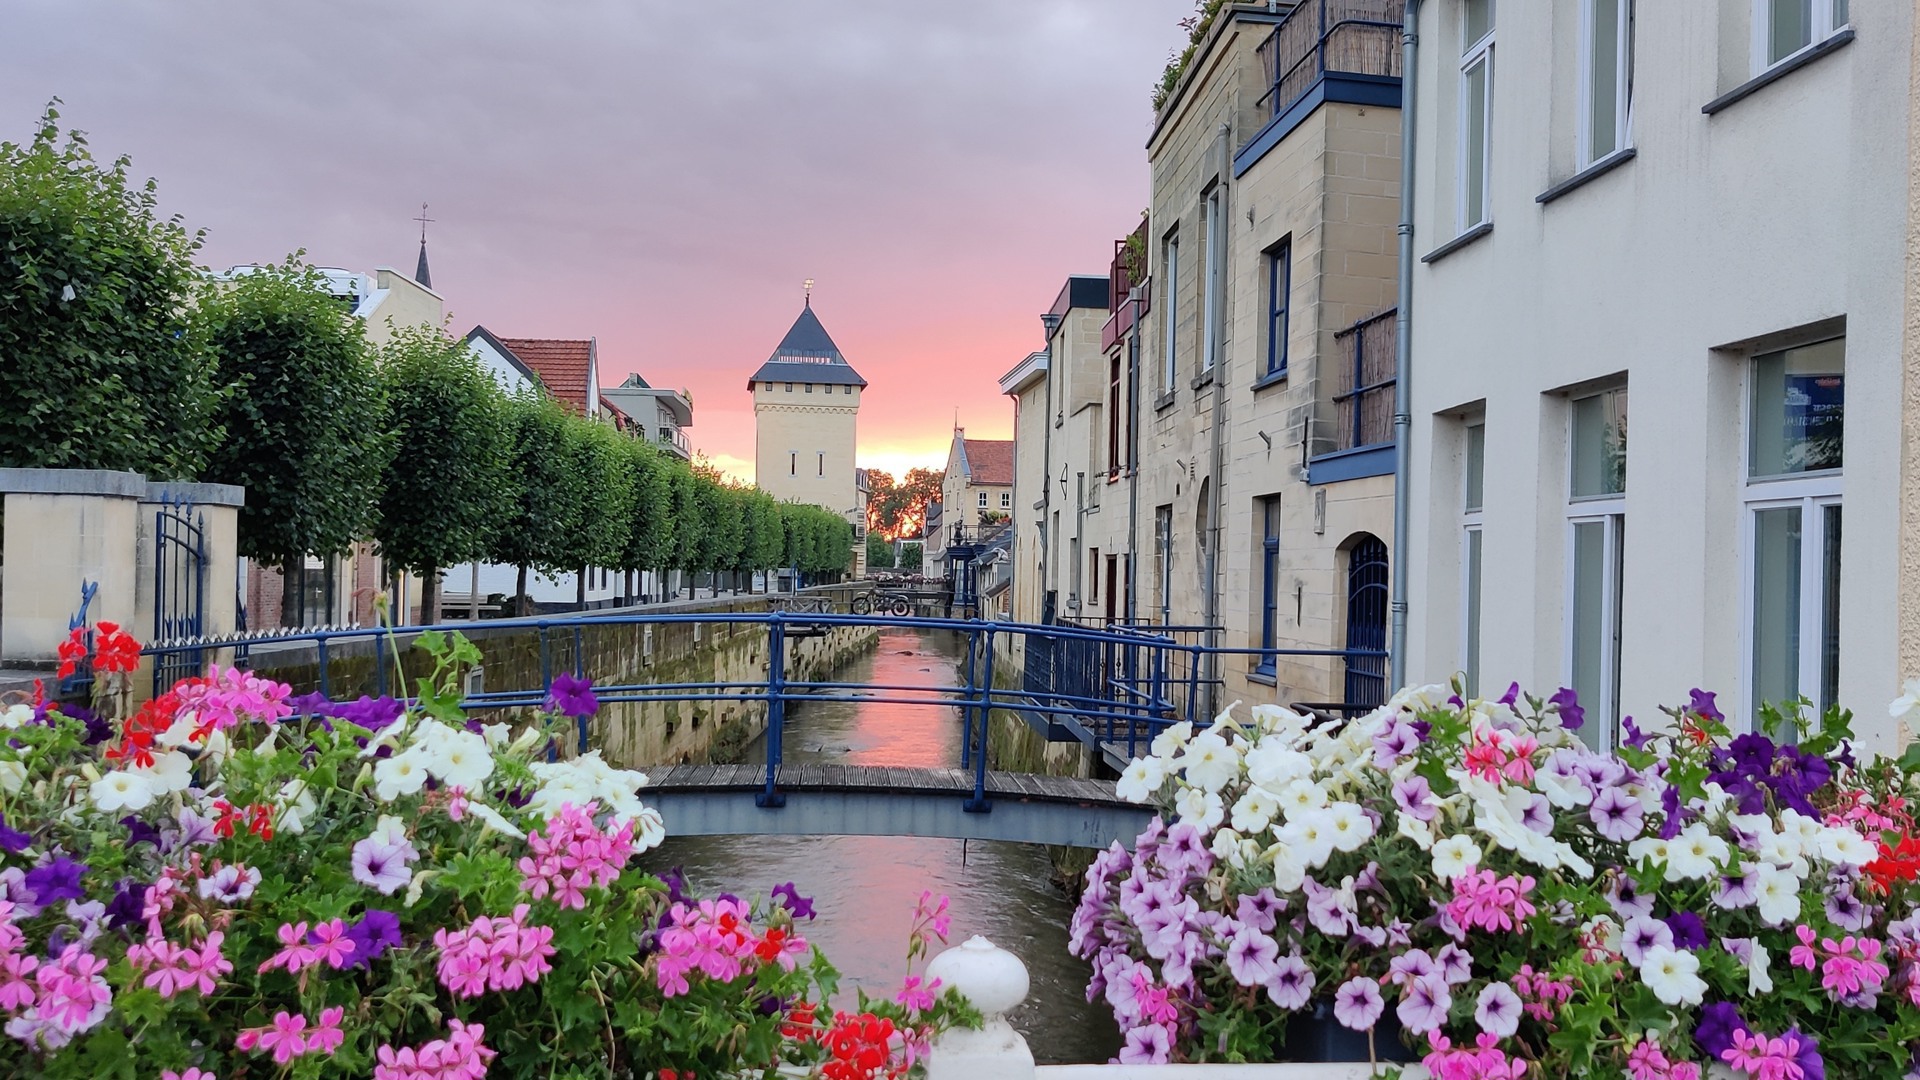 ¡Descubre el precioso entorno de Maastricht!